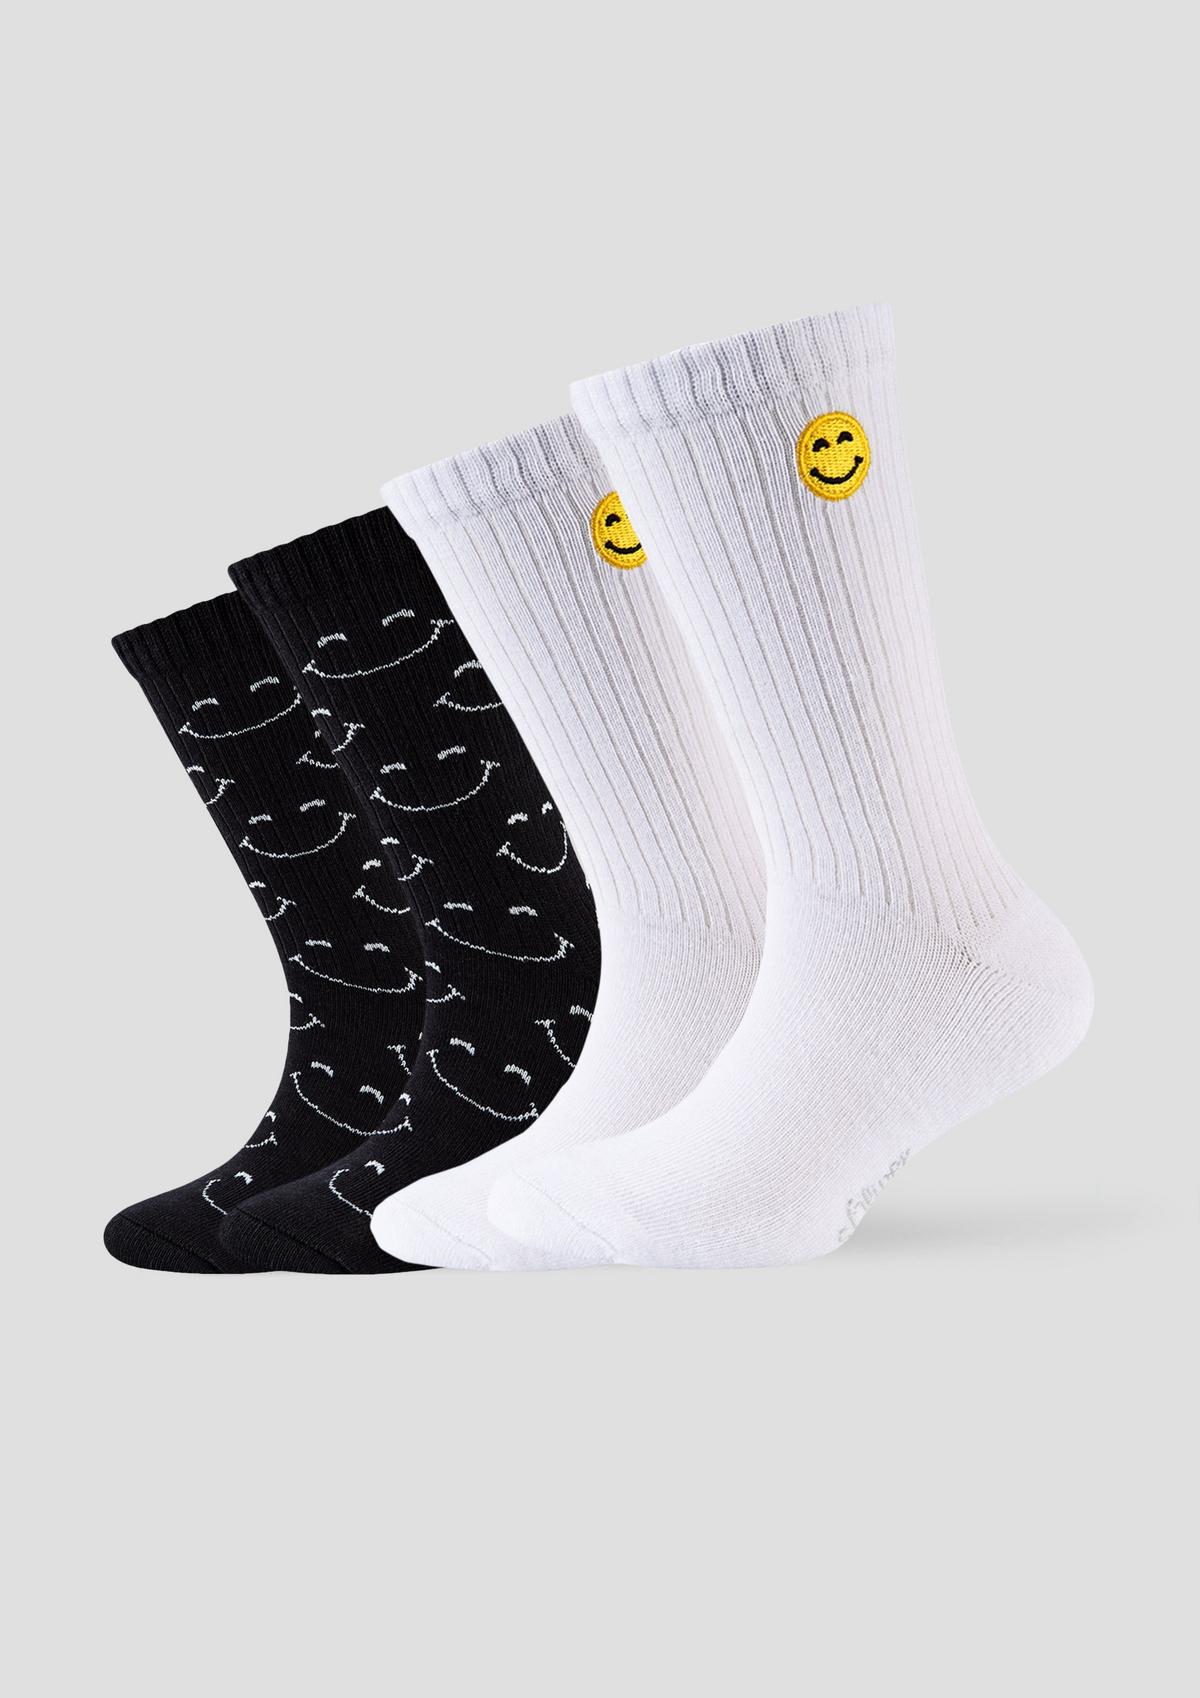 weiß Socken - mit Smiley-Details